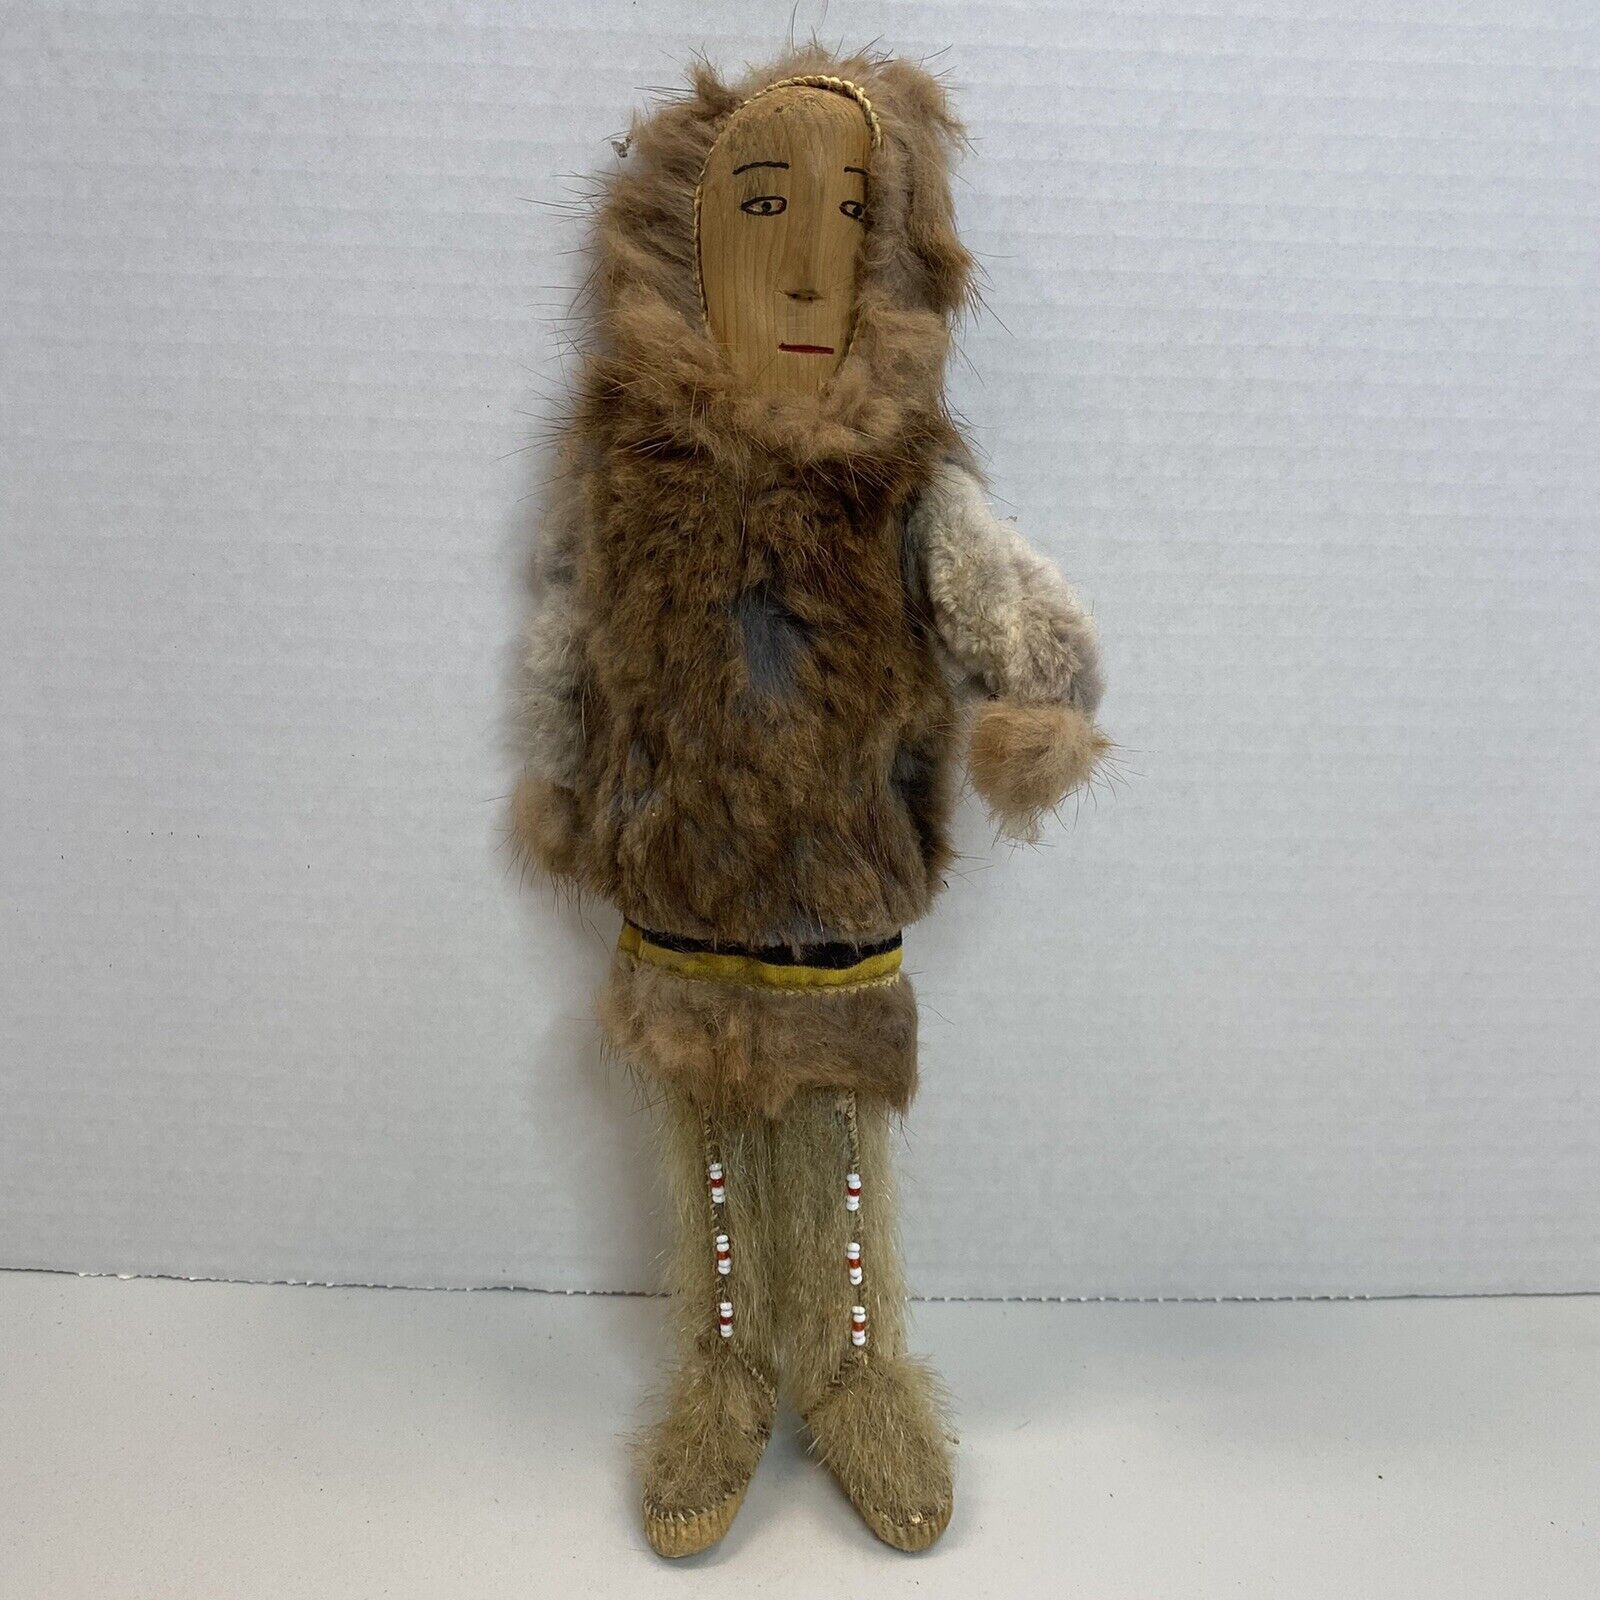 Old Carved Wood Face Eskimo Doll Primitive Alaska Folk Art Toy Beautiful Details